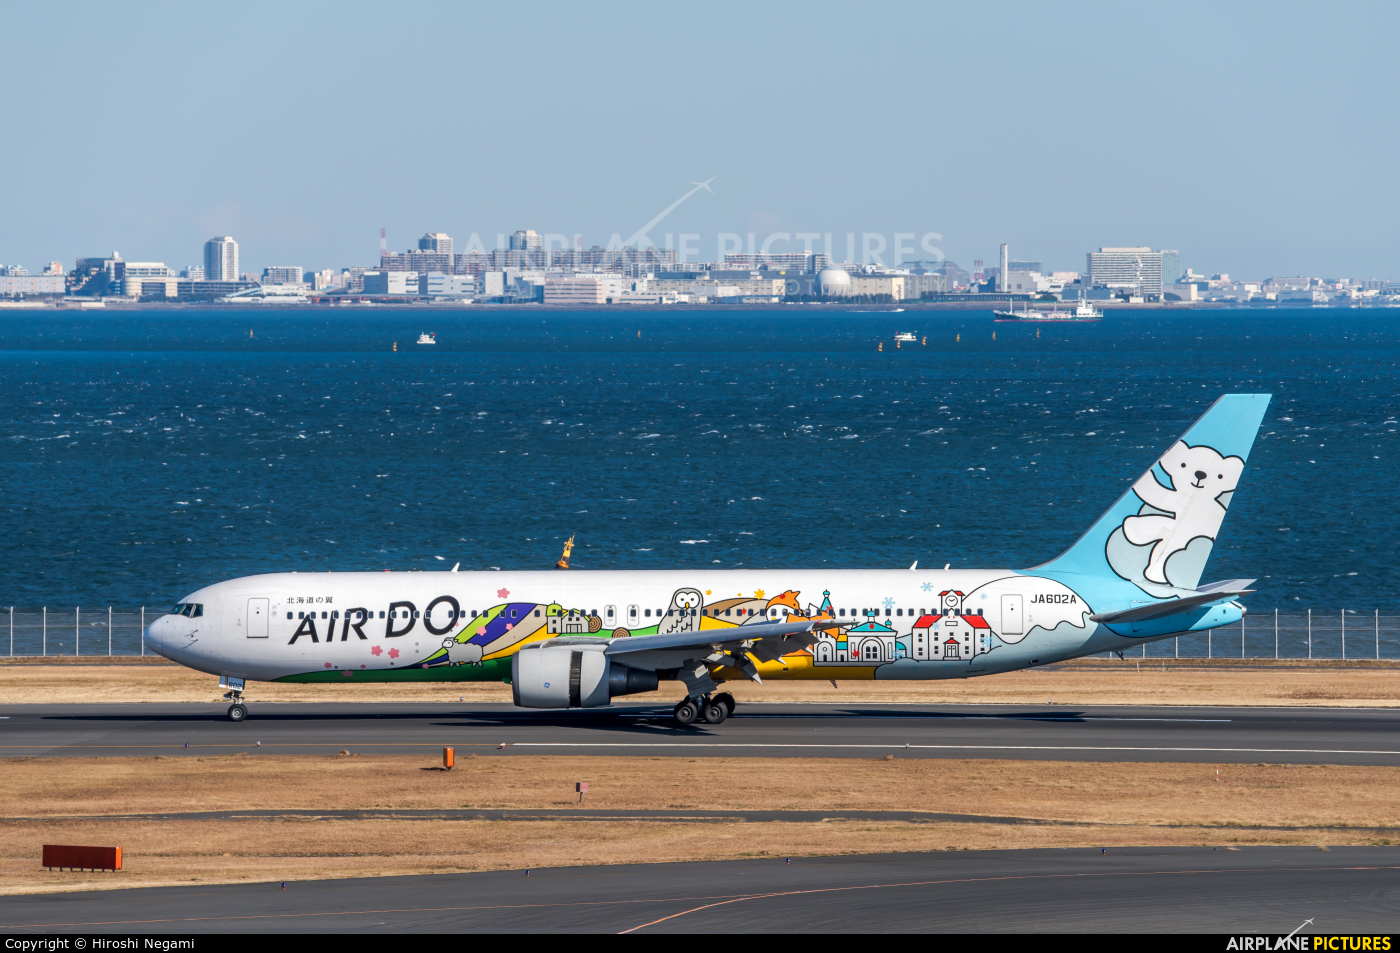 Air Do - Hokkaido International Airlines JA602A aircraft at Tokyo - Haneda Intl